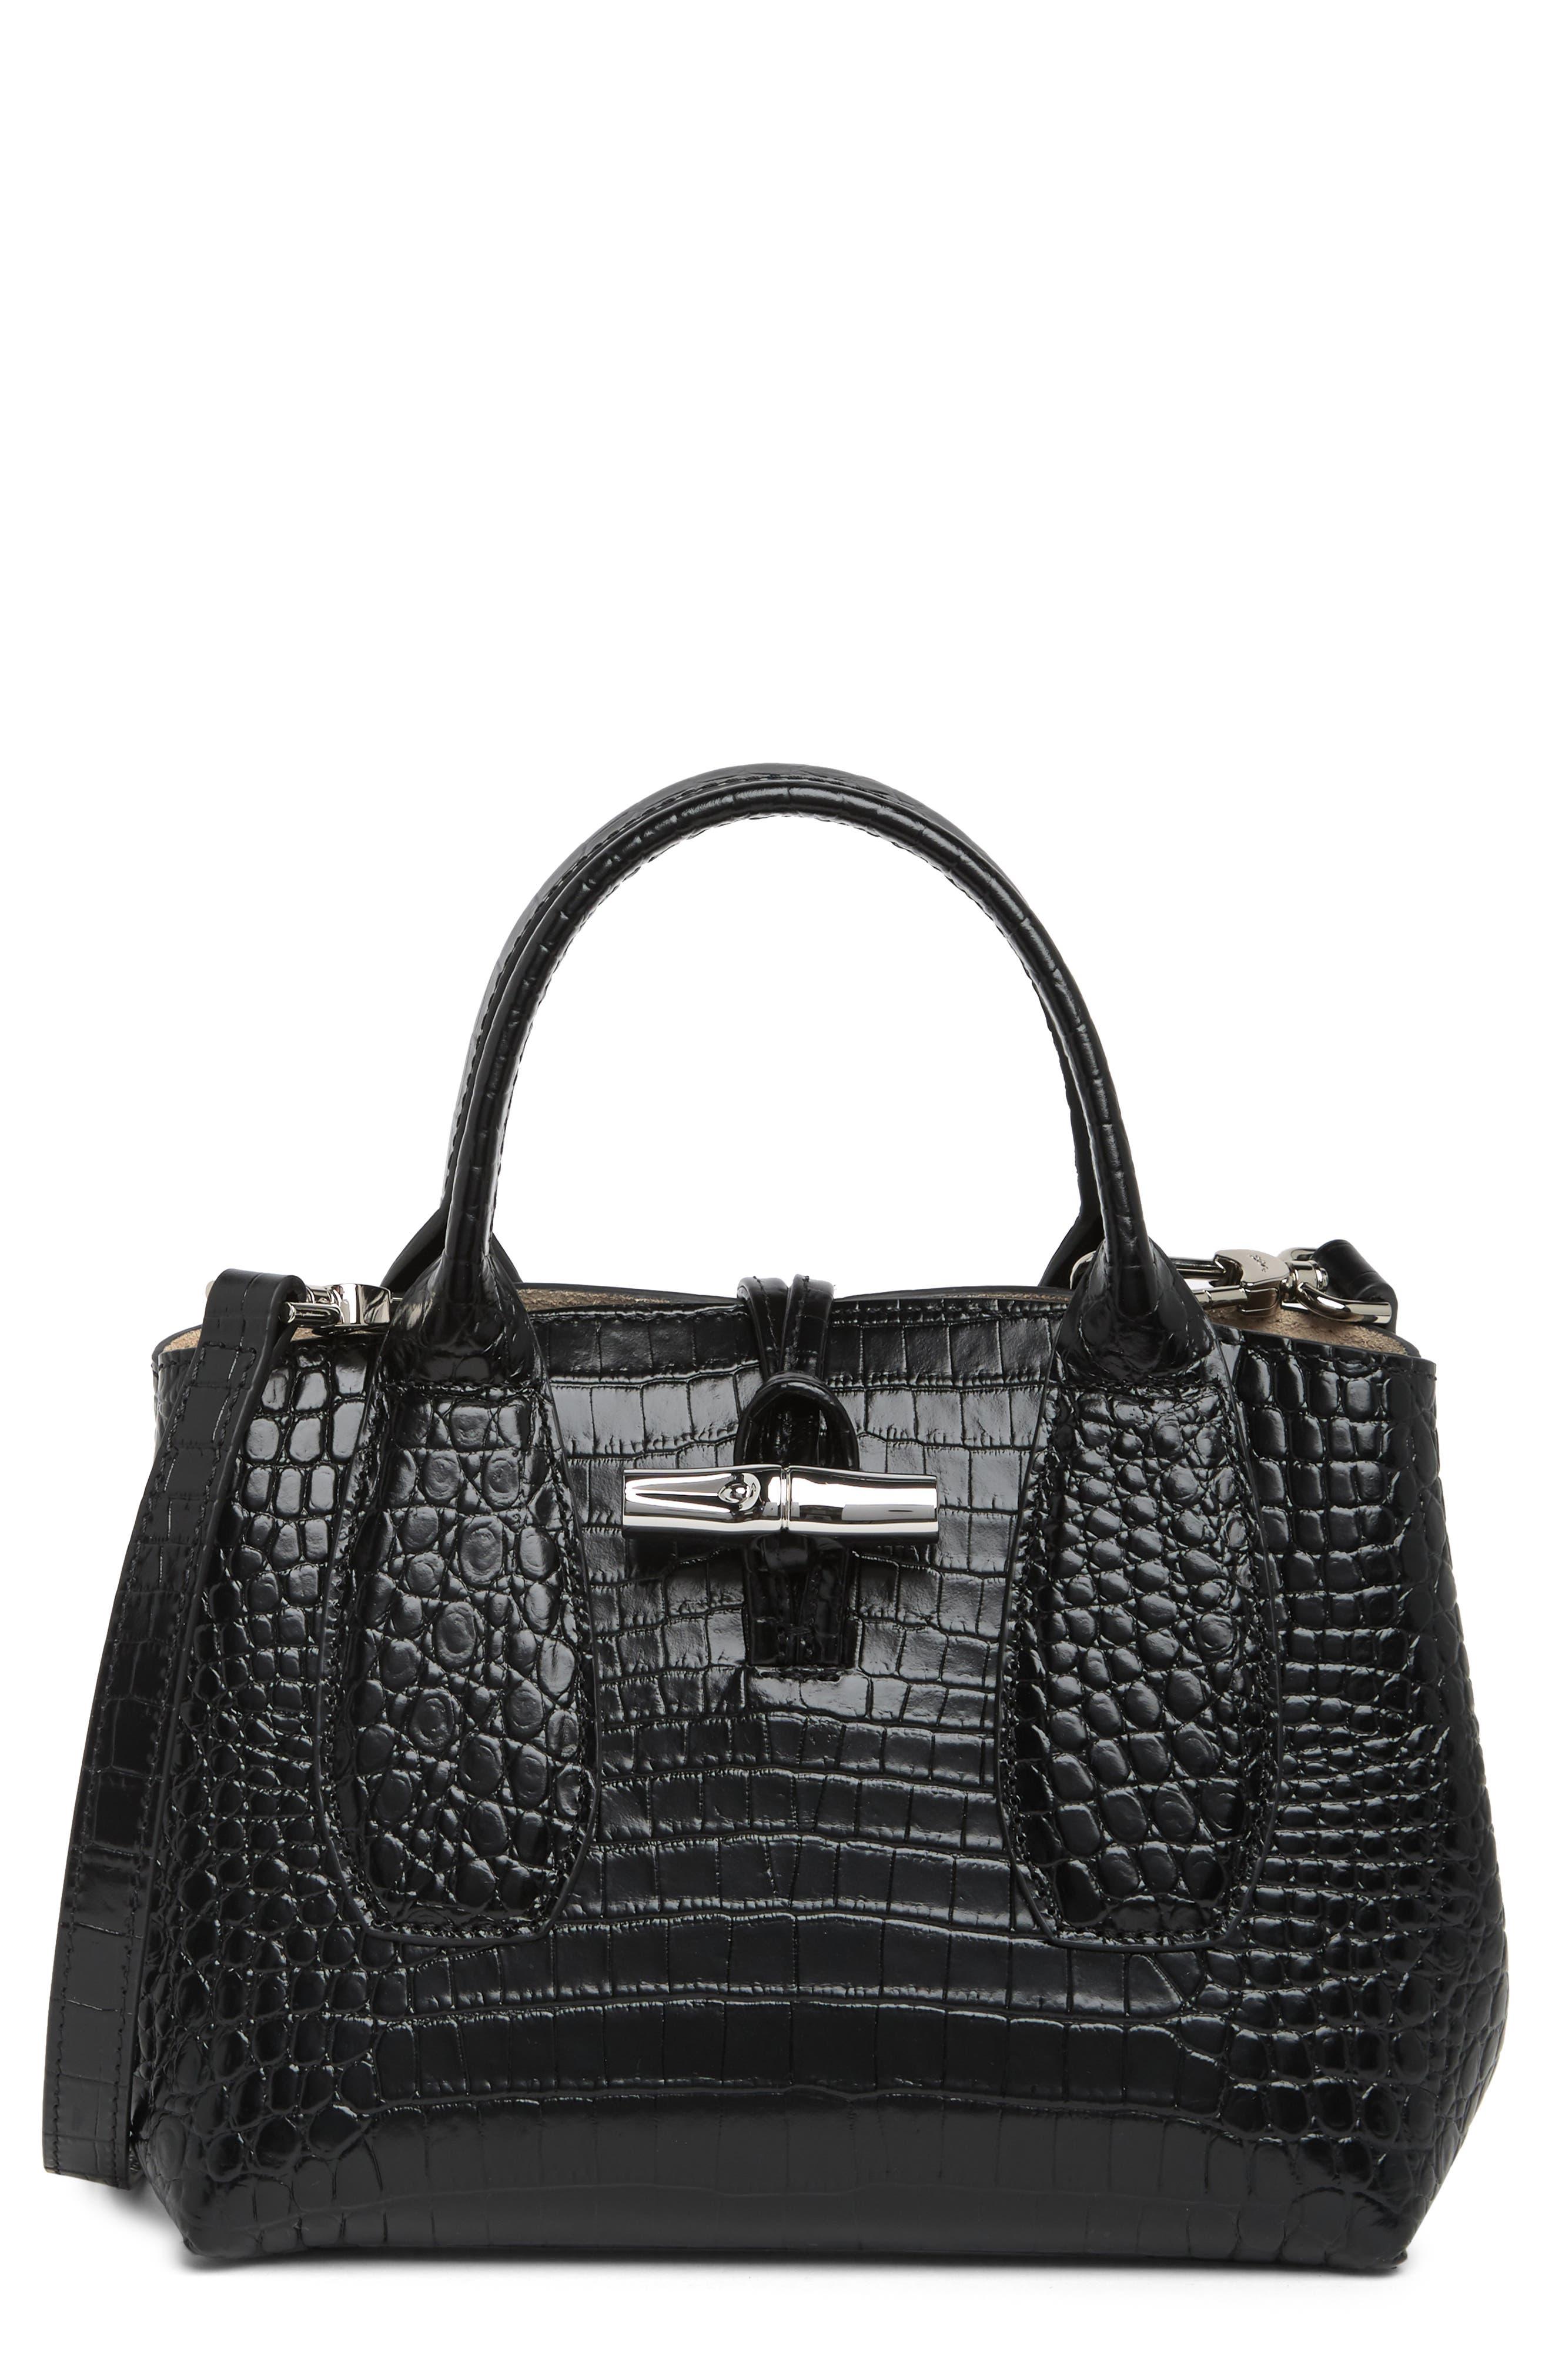 Longchamp Medium Roseau Top Handle Bag - Black for Women